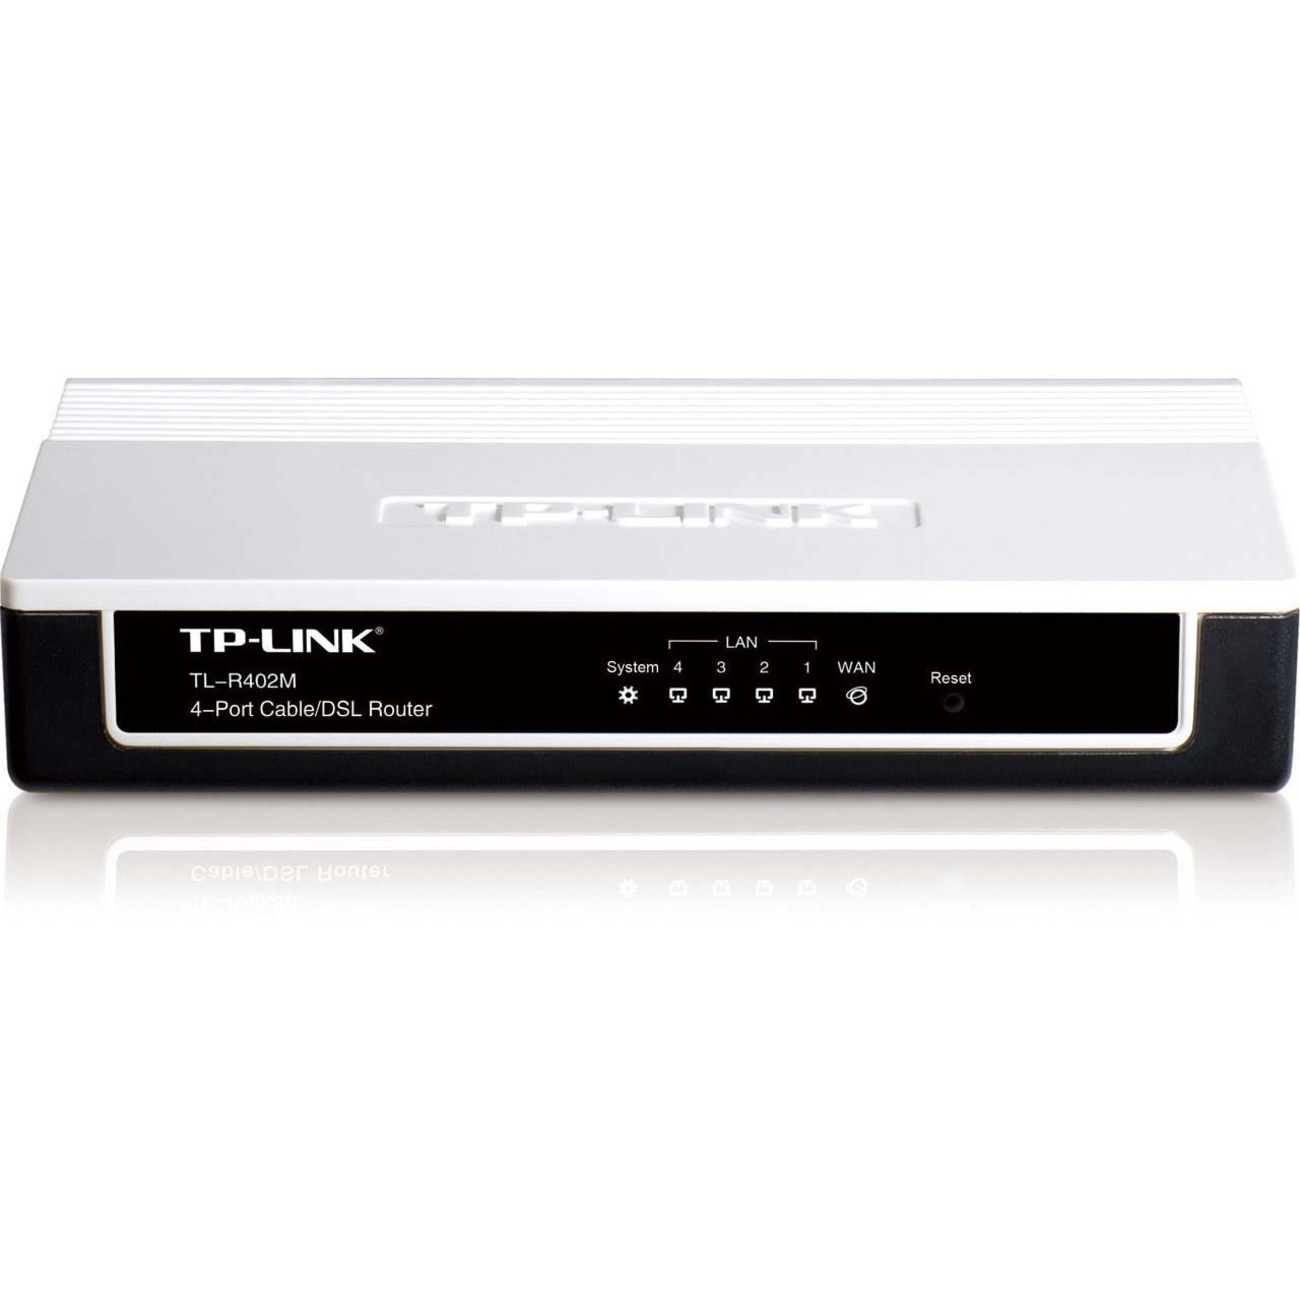 TP-LINK 4-port Cable/DSL Router